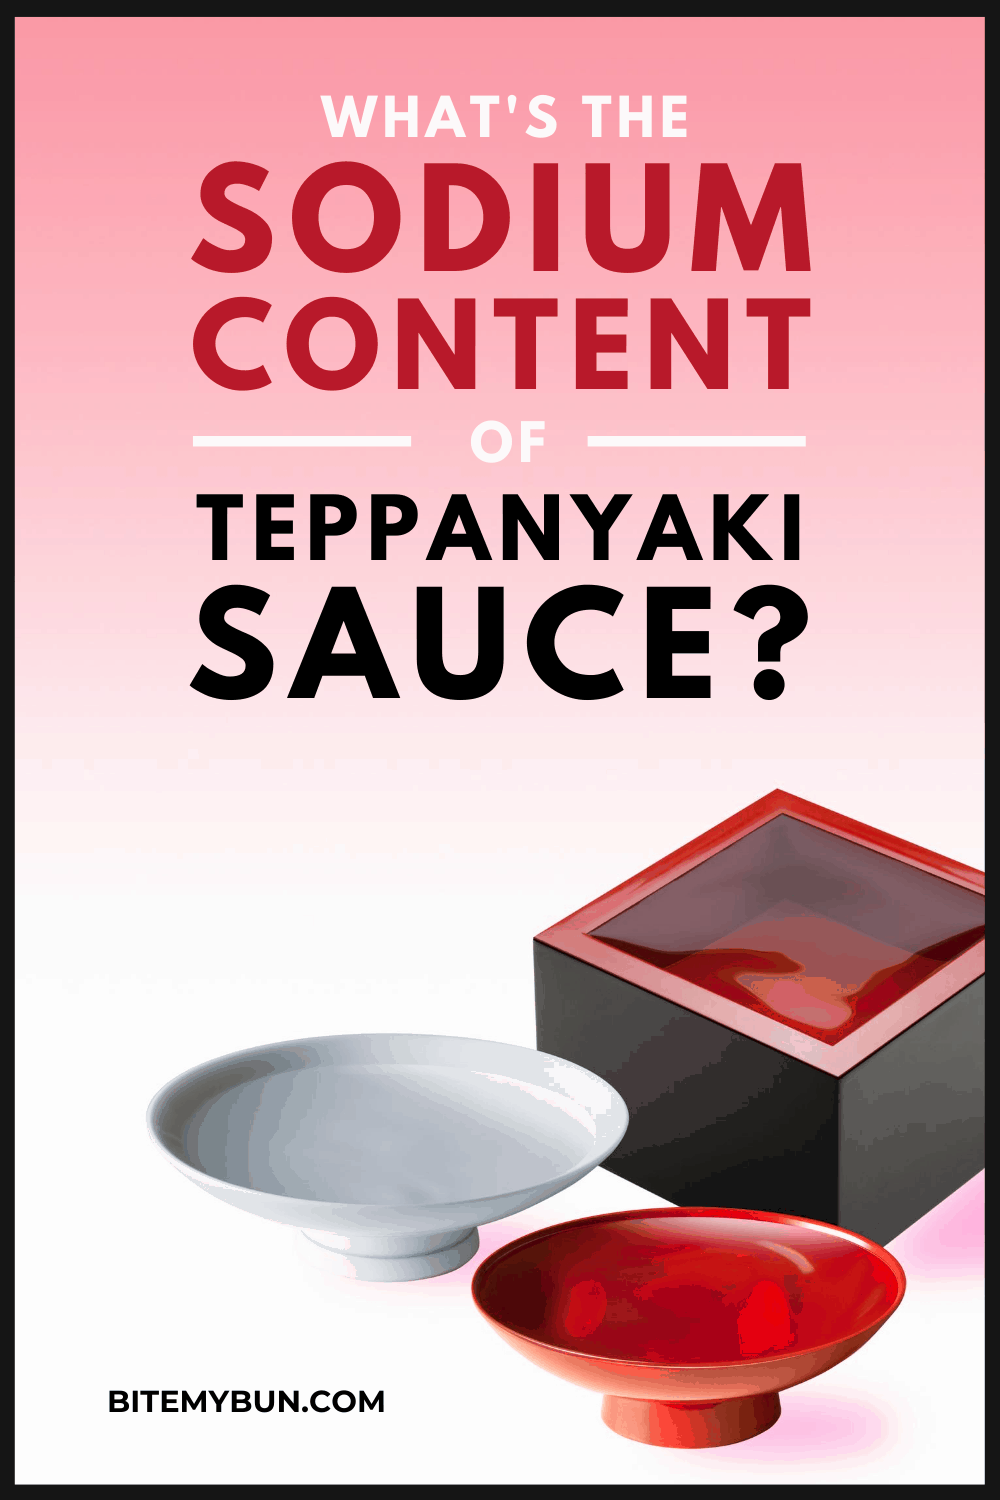 ¿Cuál es el contenido de sodio de la salsa teppanyaki?